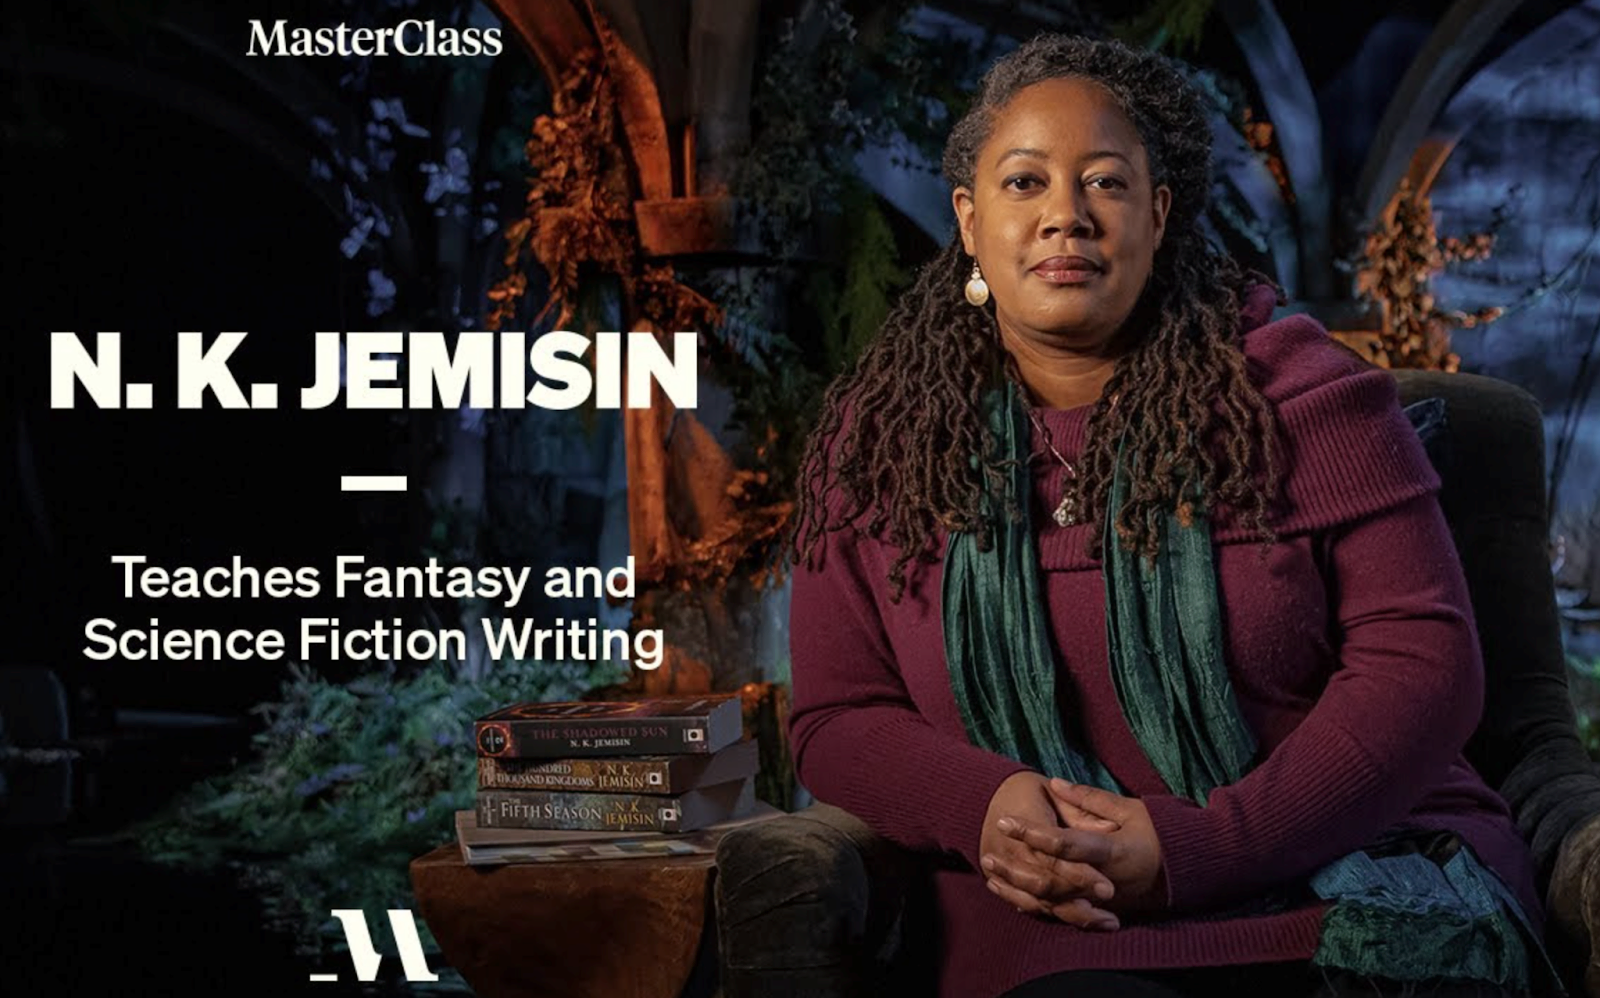 N.K. Jemisin MasterClass Review